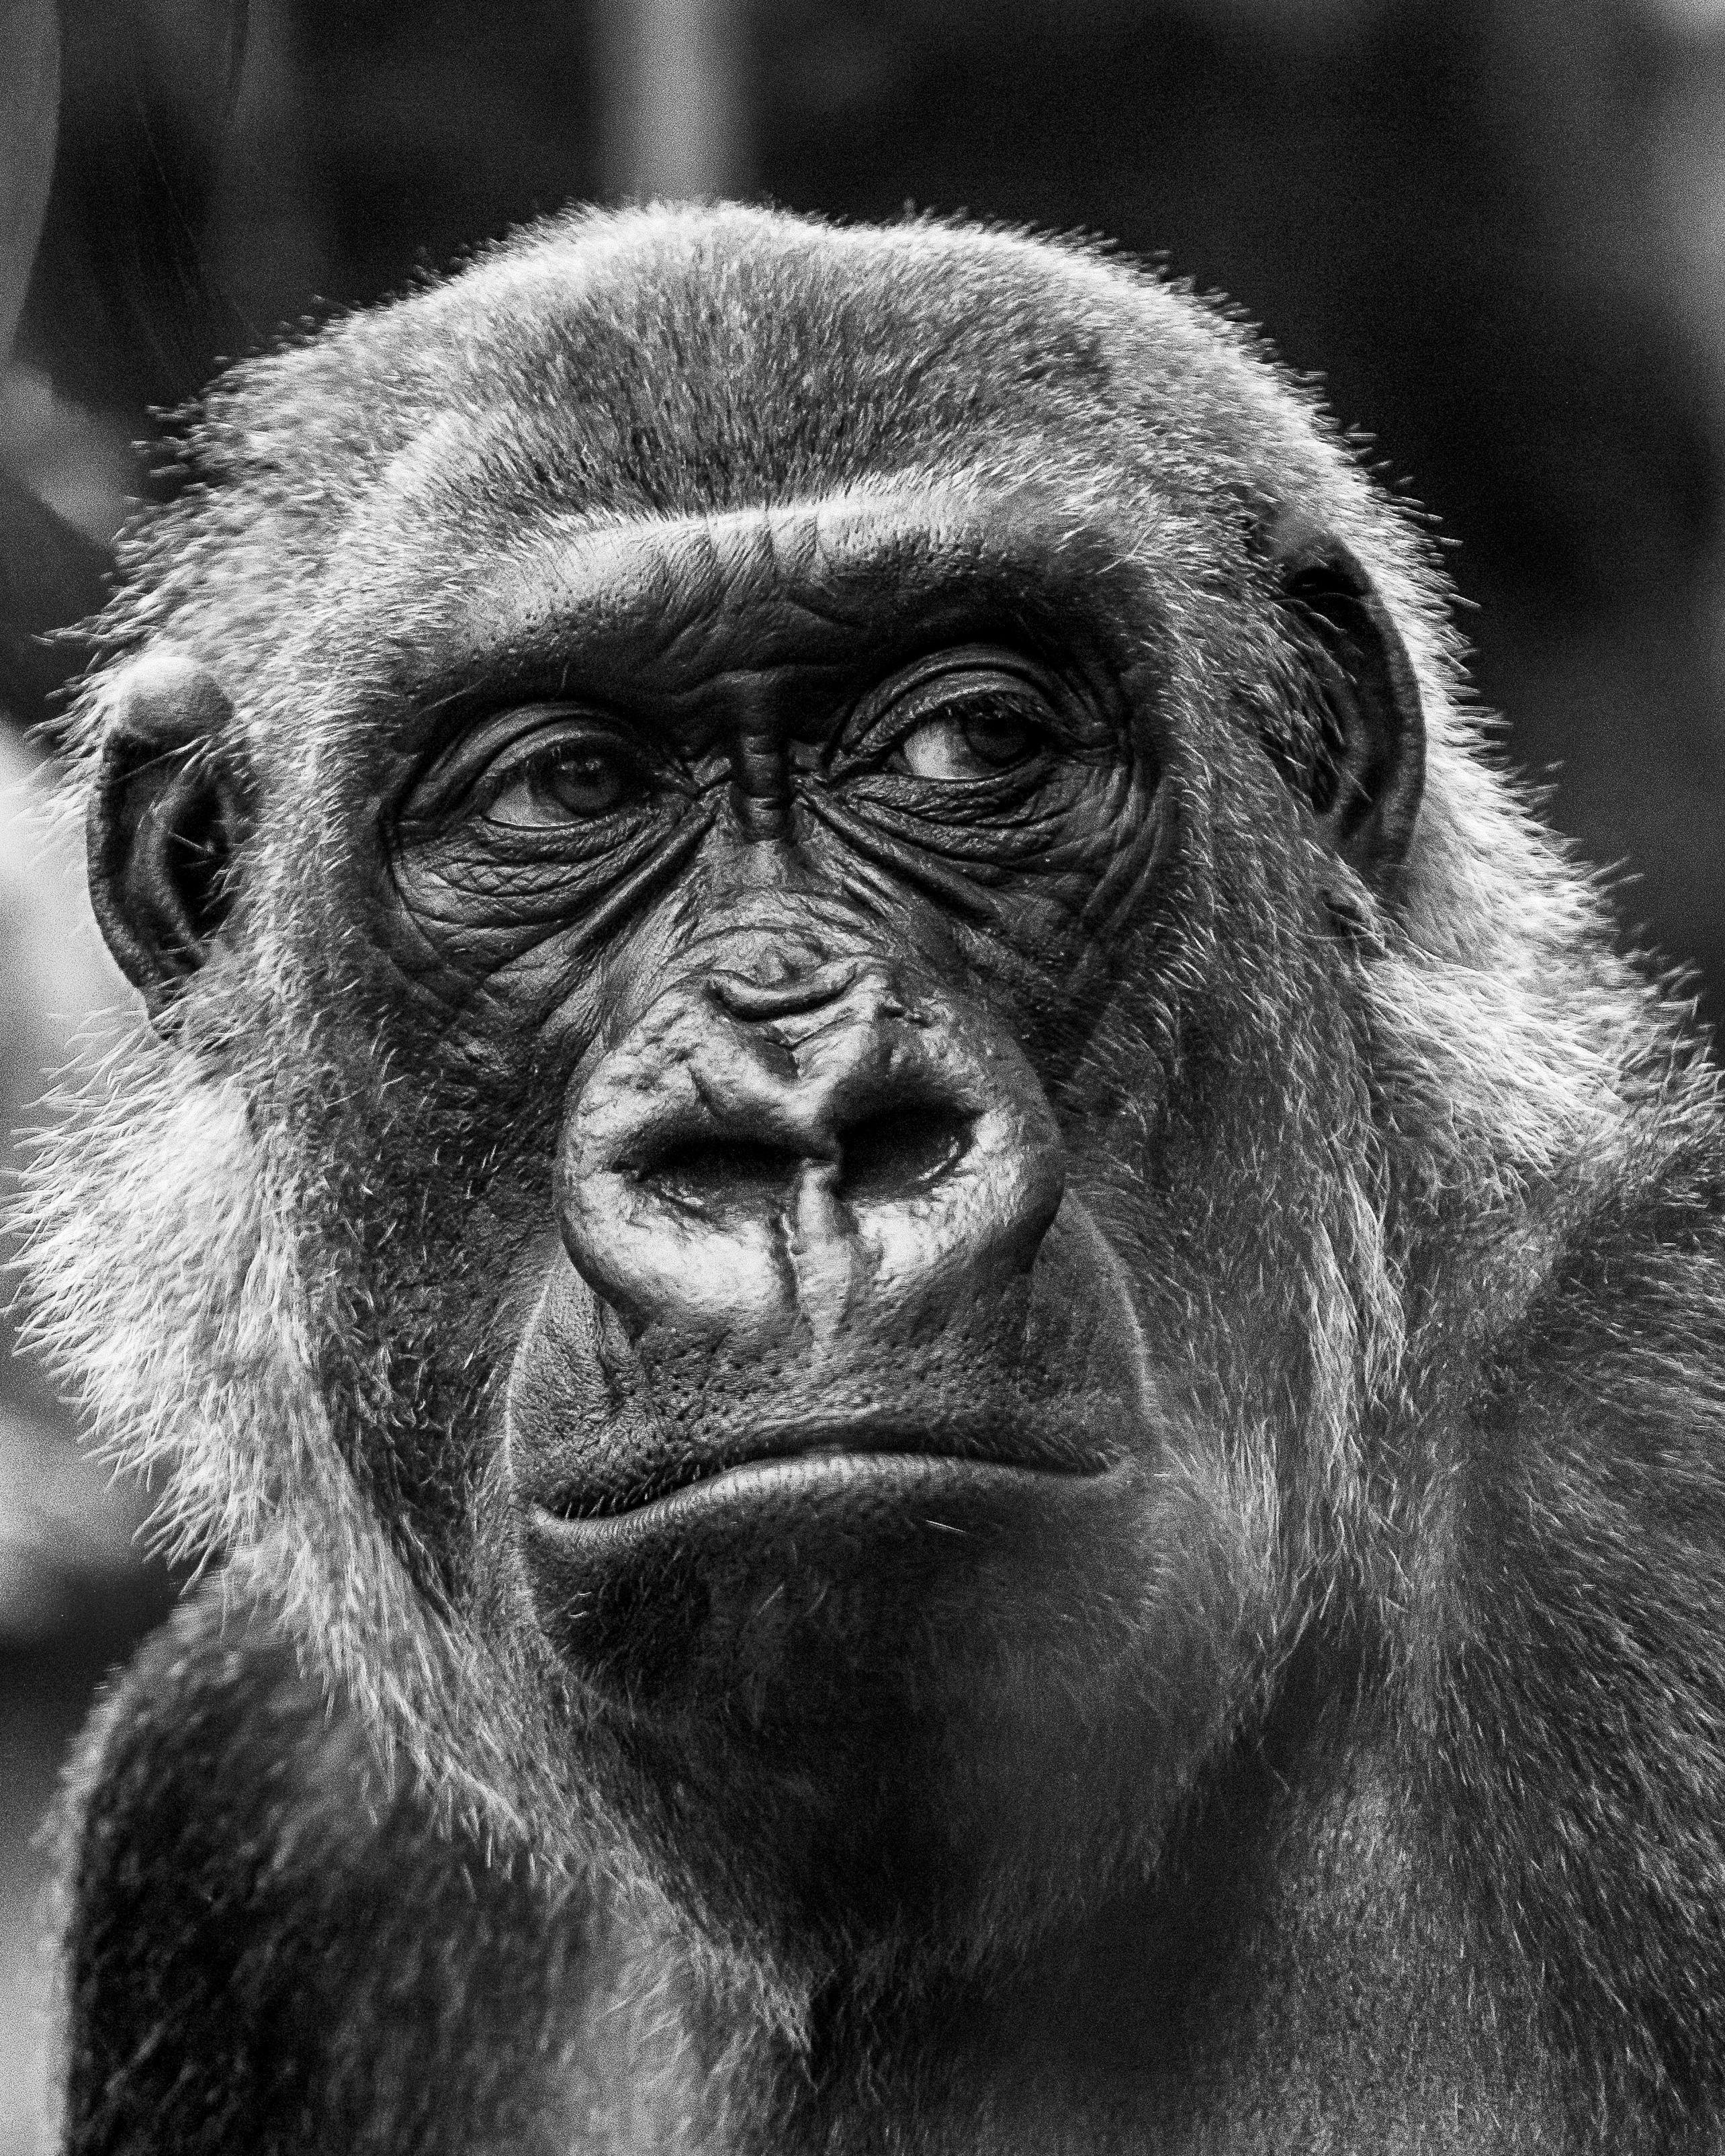 Không gian ảnh đẹp về khỉ đột sẽ khiến cho bạn yêu thích càng nhiều hơn về loài động vật này. Nếu bạn muốn sở hữu những bức ảnh độc đáo nhất, hãy sử dụng ngay công cụ tải xuống miễn phí này. Bạn sẽ được làm mới kiến ​​thức và thực hành của mình thậm chí còn có thể in và treo tường để trang trí nhà của mình.